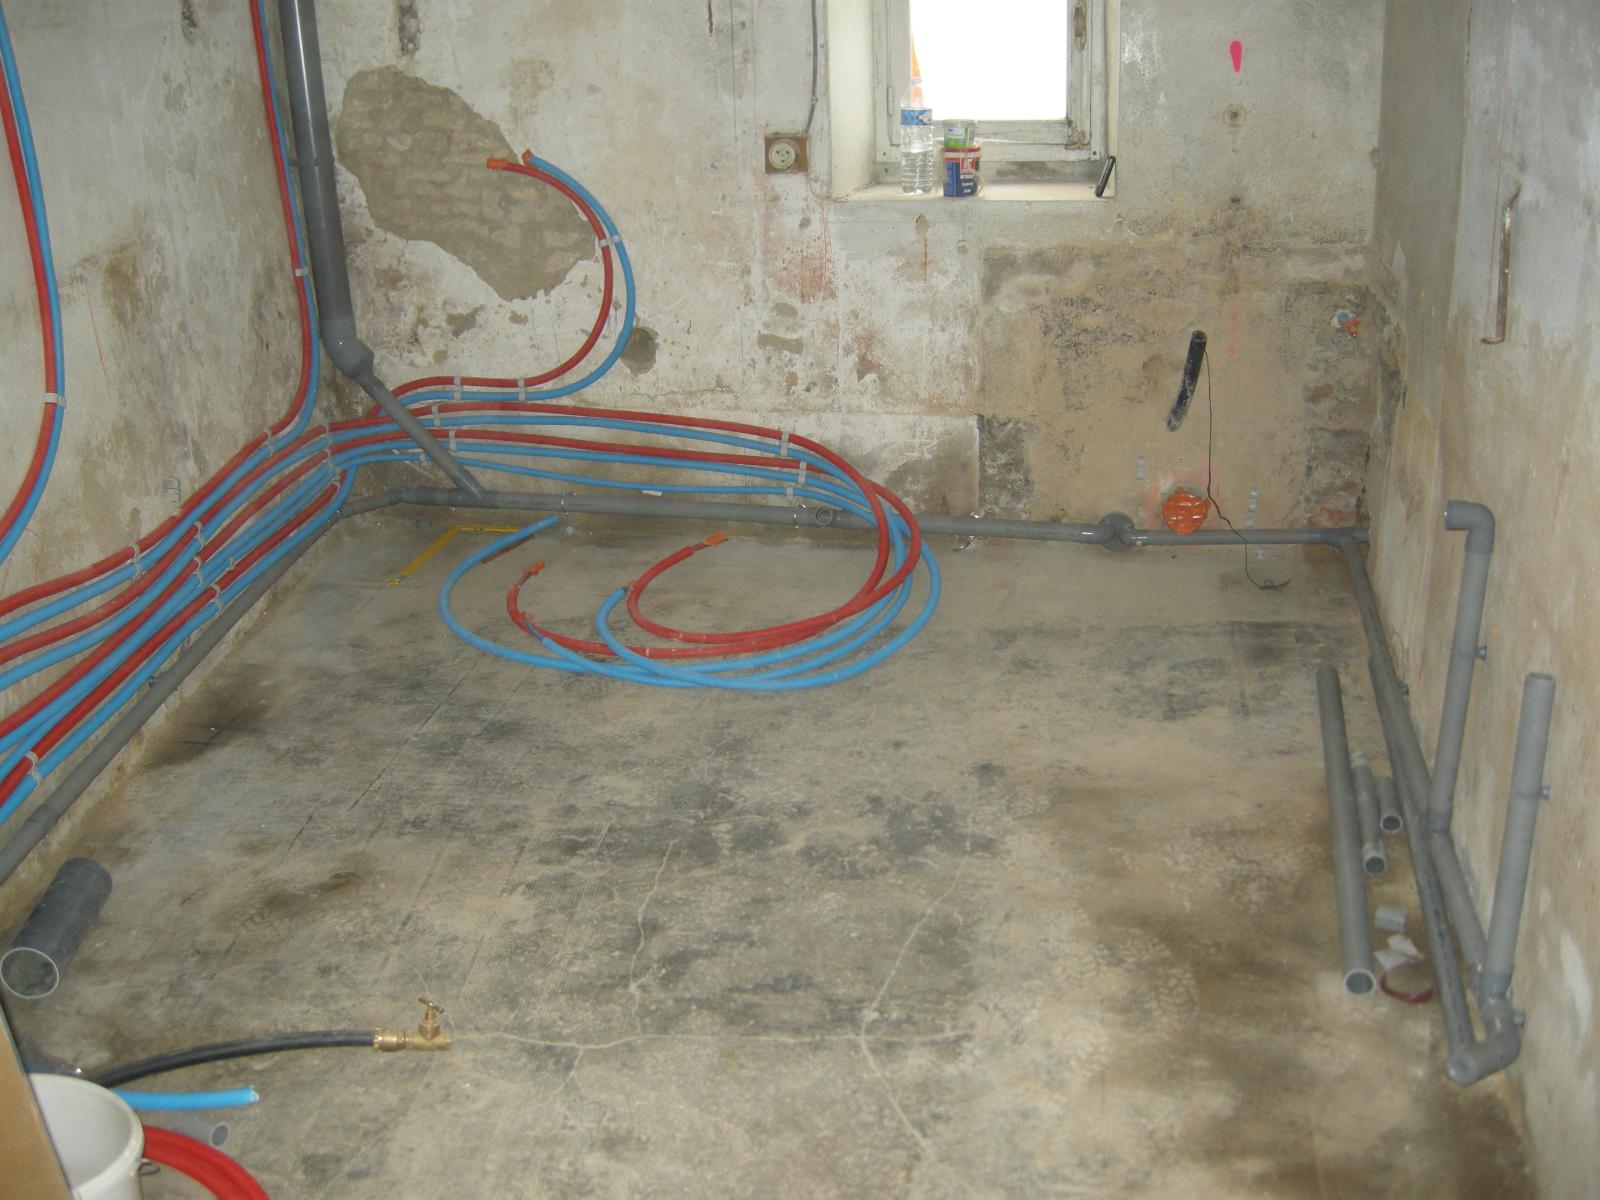 Maison en rénovation par votre plombier GIANI à La Hoguette (14)